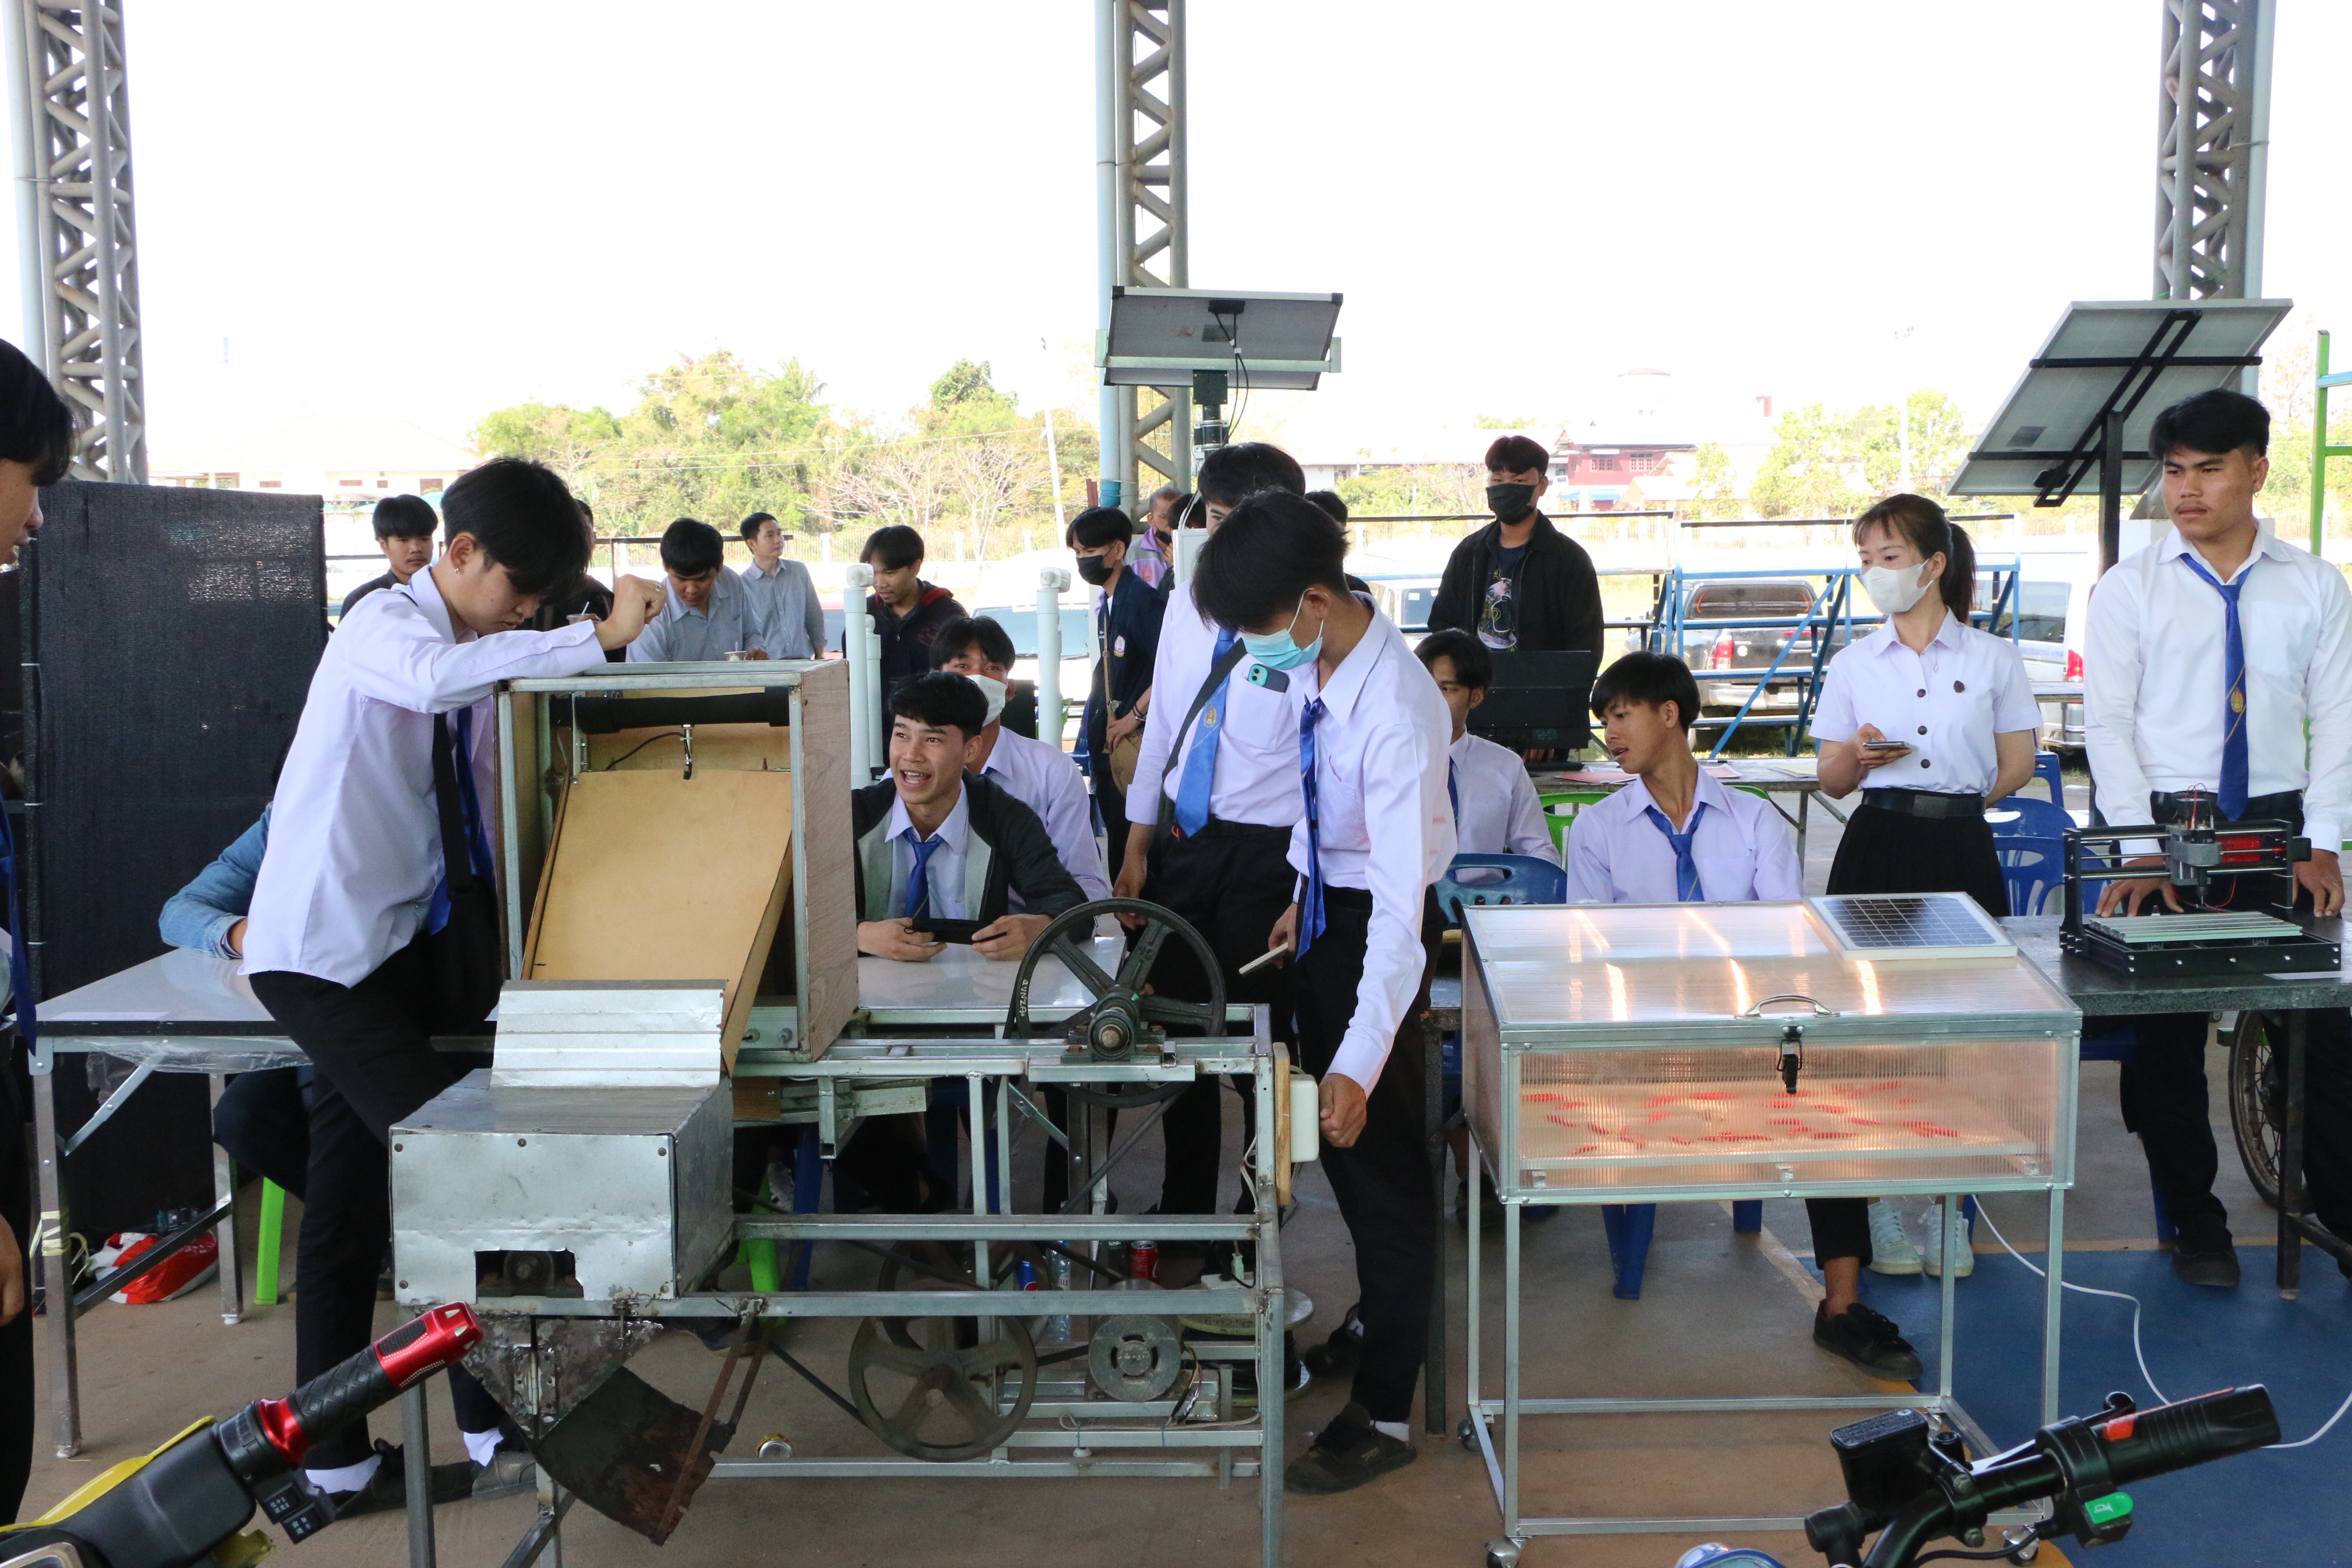 วิทยาลัยธาตุพนม ม.นครพนม จัดประกวดสิ่งประดิษฐ์ นวัตกรรม สานสัมพันธ์ลุ่มน้ำโขง ครั้งที่ 8